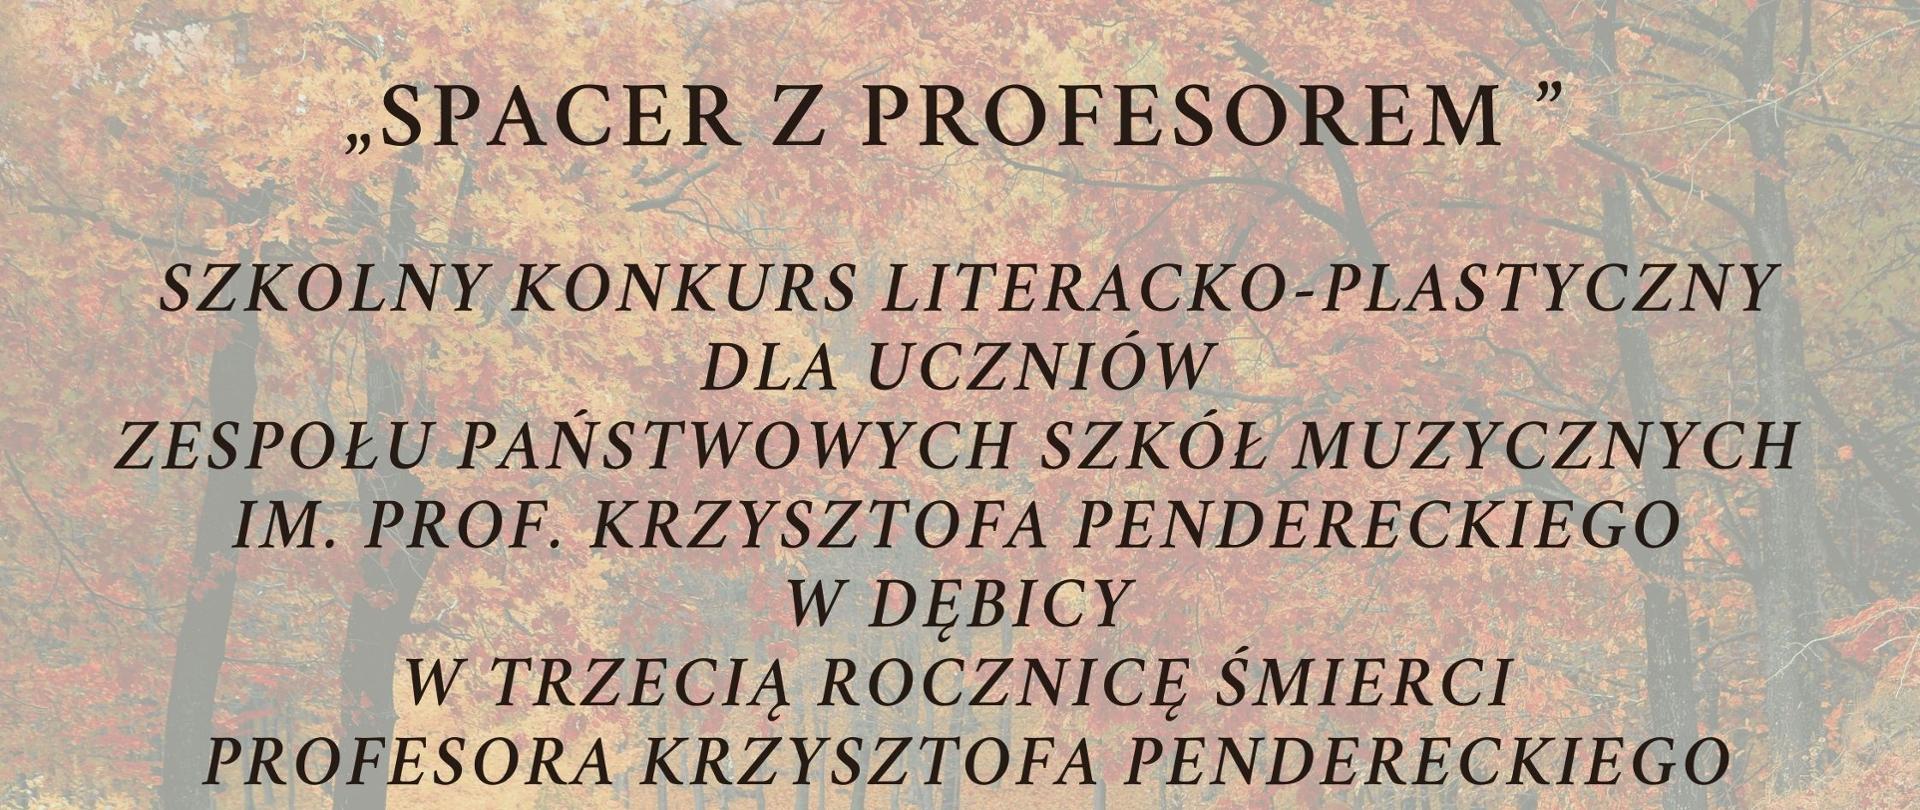 Plakat z wydarzeniem dotyczy Szkolnego Konkursu literacko-plastycznego Spacer z Profesorem. Konkurs zorganizowano w trzecią rocznicę śmierci profesora K. Pendereckiego